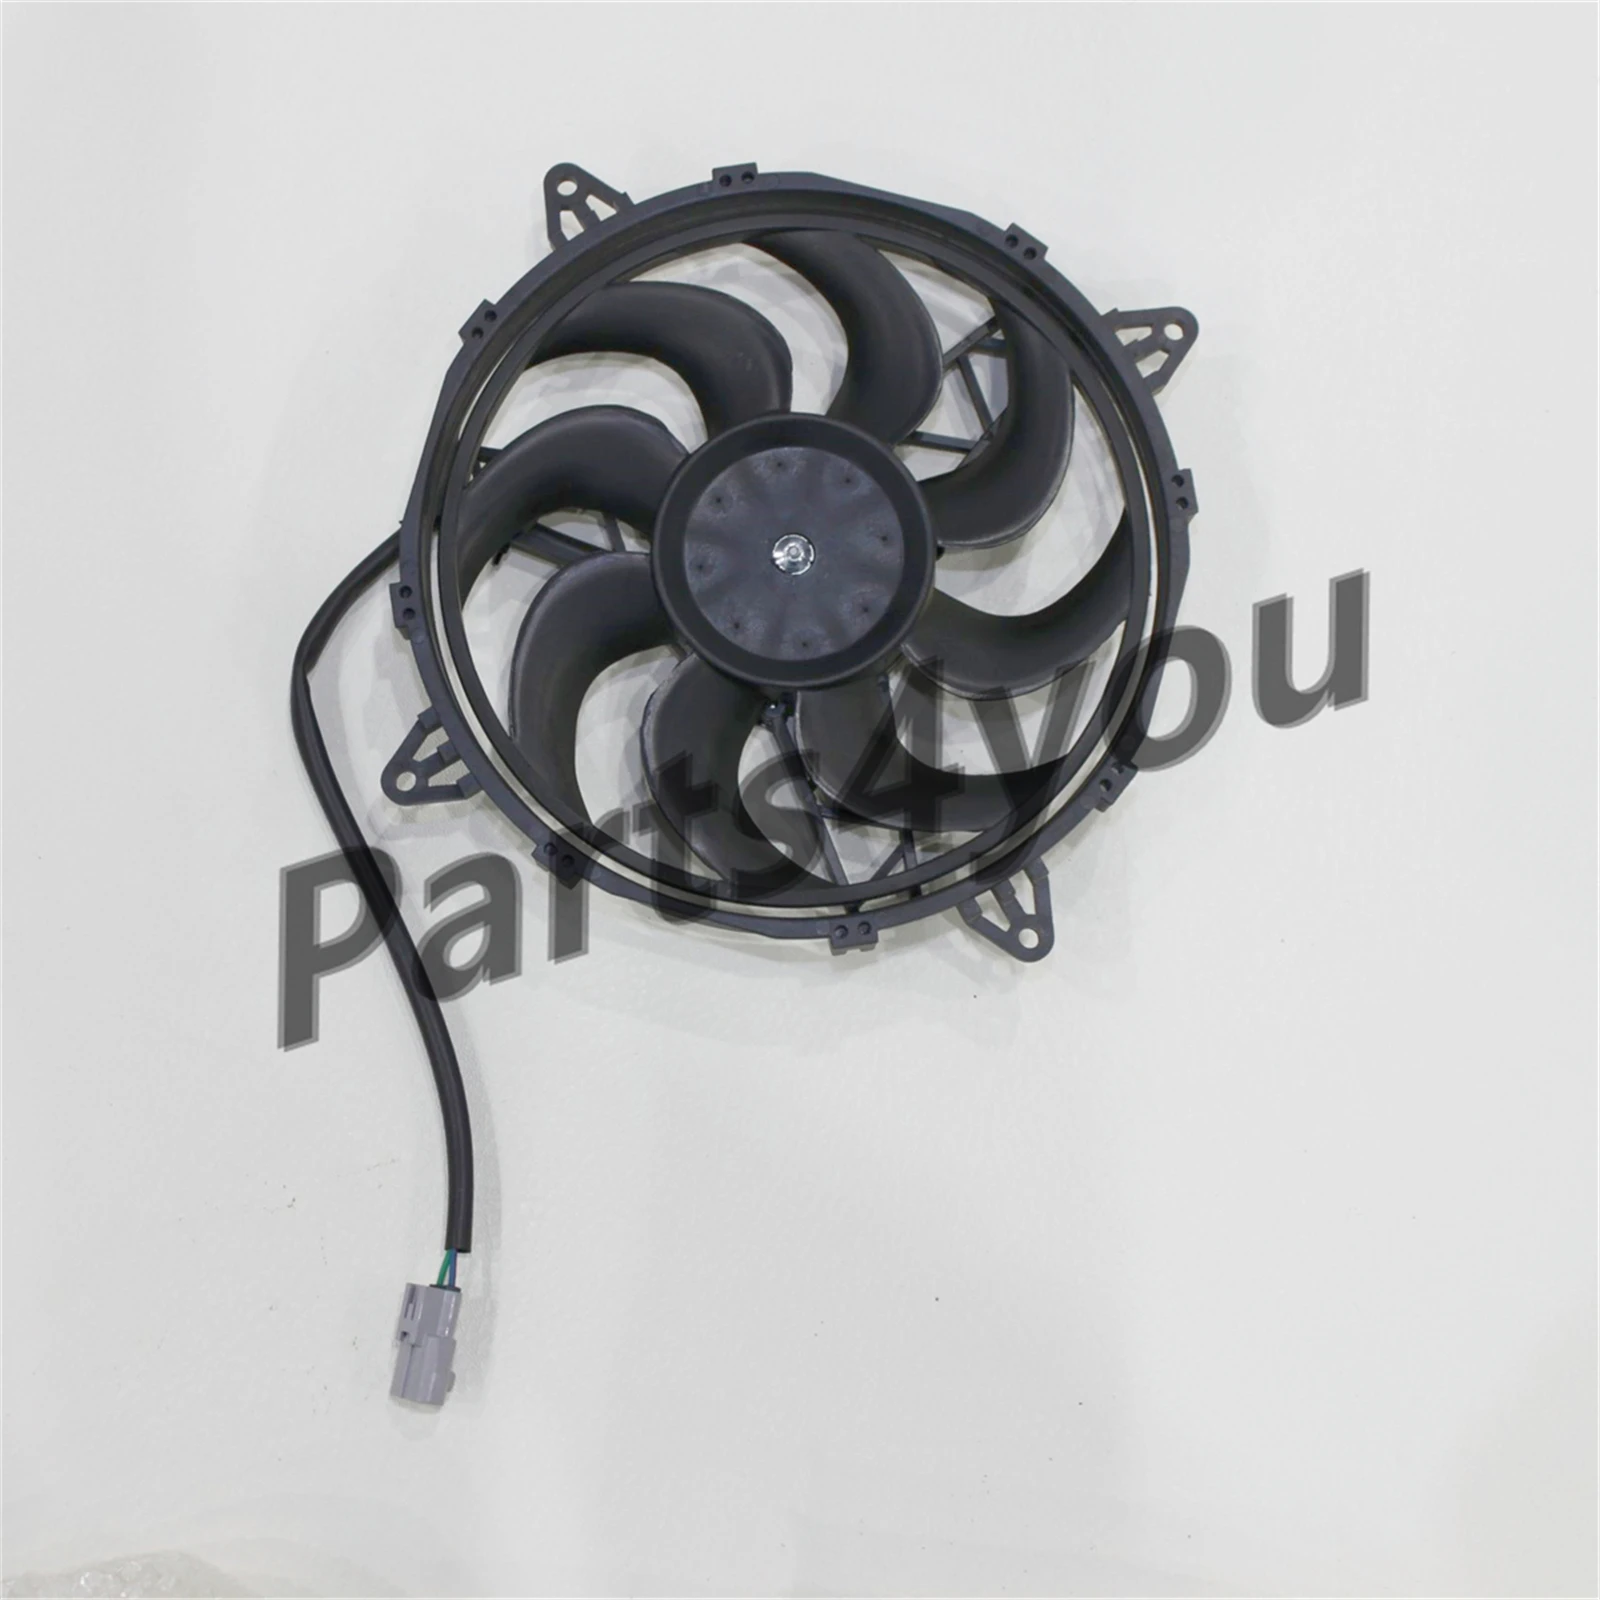 Panasonic Fan Motor Radiator Fan For CFmoto 550 Z550 550EX U550 800 X8 Z8 800EX Z8-EX U8 1000 Z1000 Z10 ATV UTV 7020-181400-1000